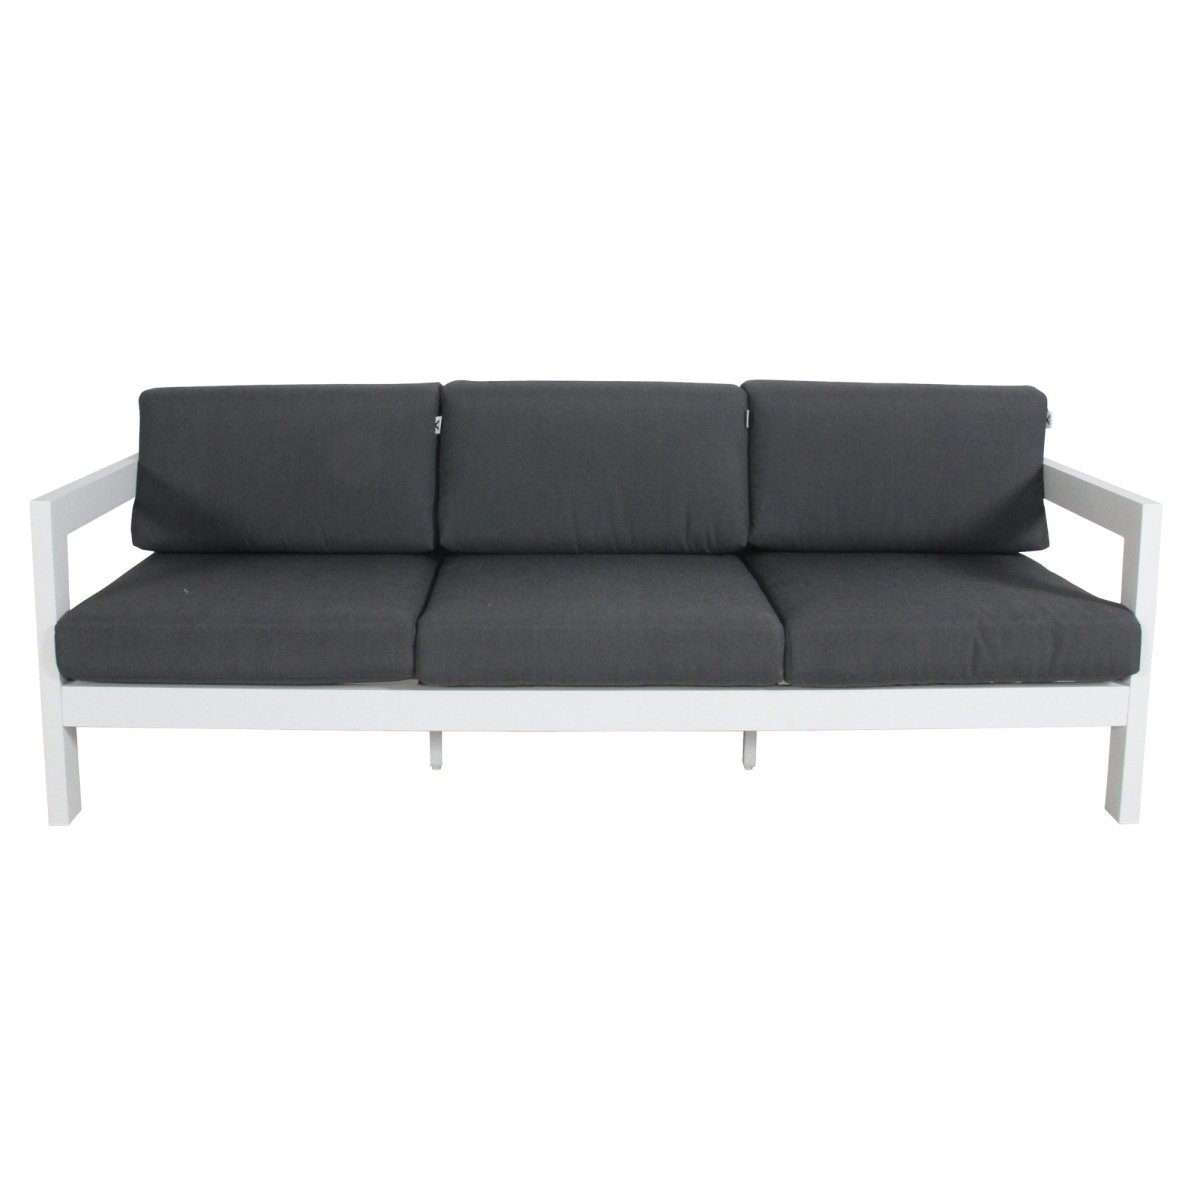 Outie 4pc Set 1+2+3 Seater Outdoor Sofa Lounge Coffee Table Aluminium White - Outdoorium